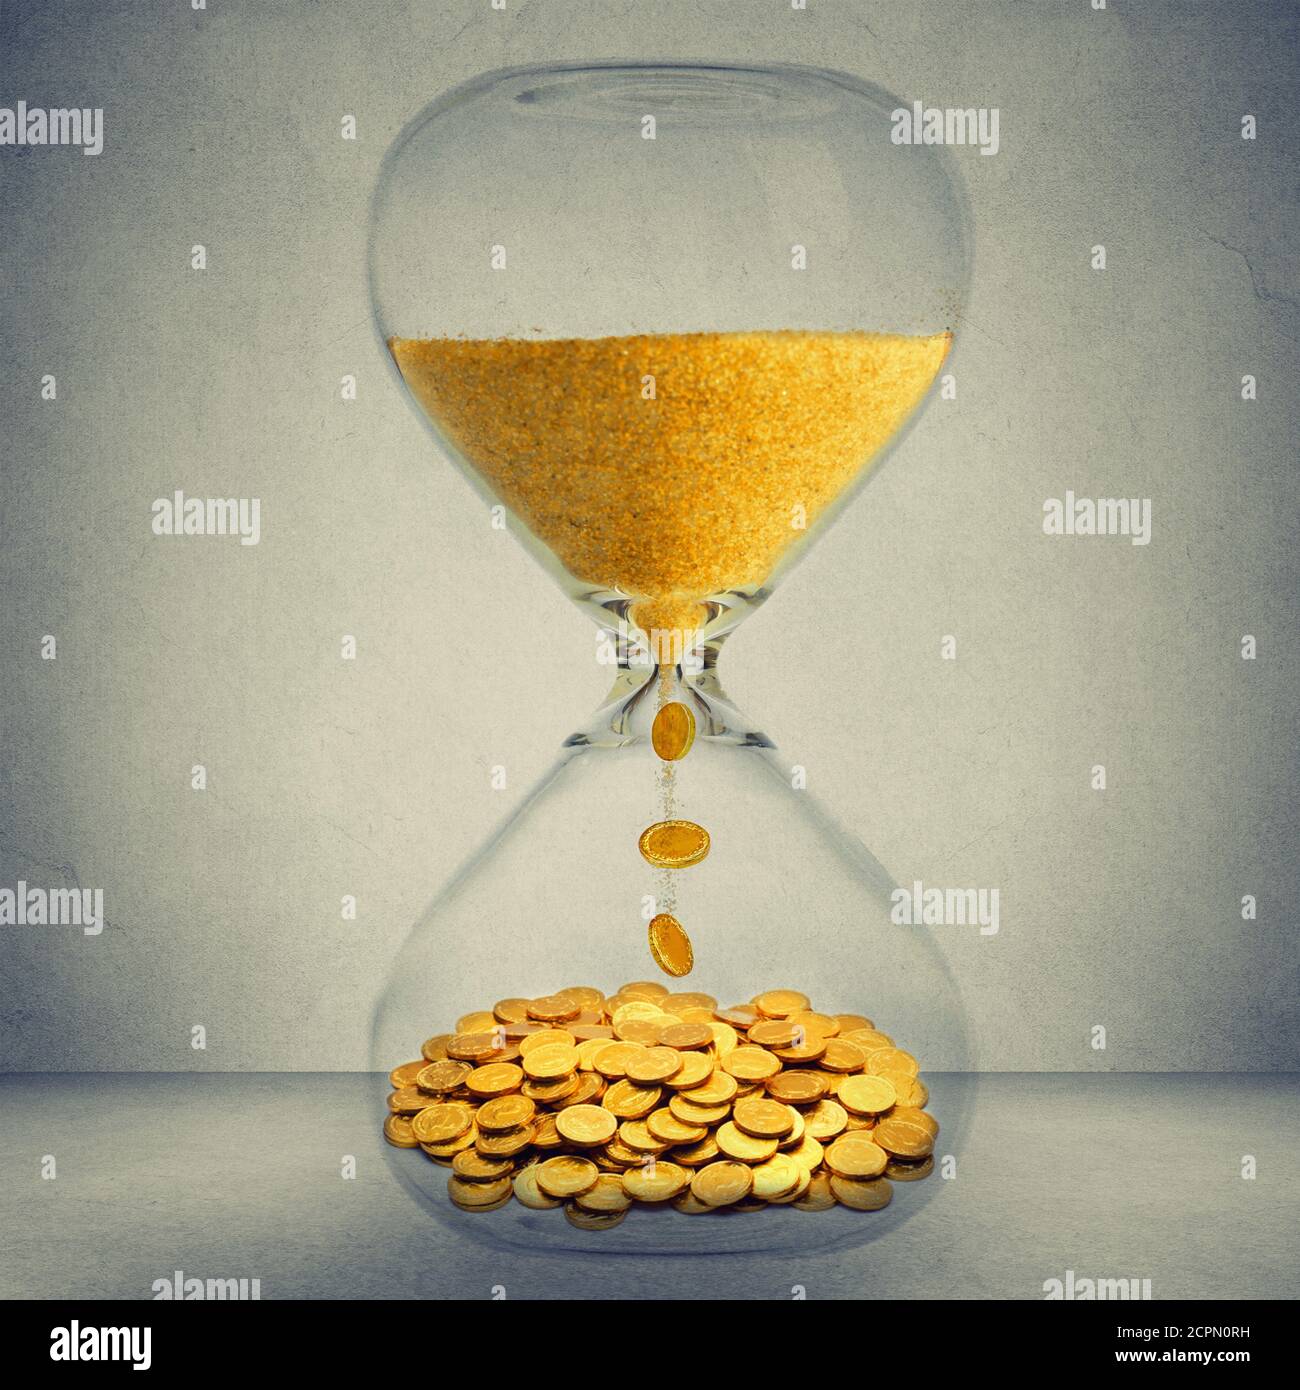 Le temps, c'est le concept d'opportunité financière de l'argent. Horloge de sable avec poussière d'or et pièces isolées sur fond de mur gris Banque D'Images